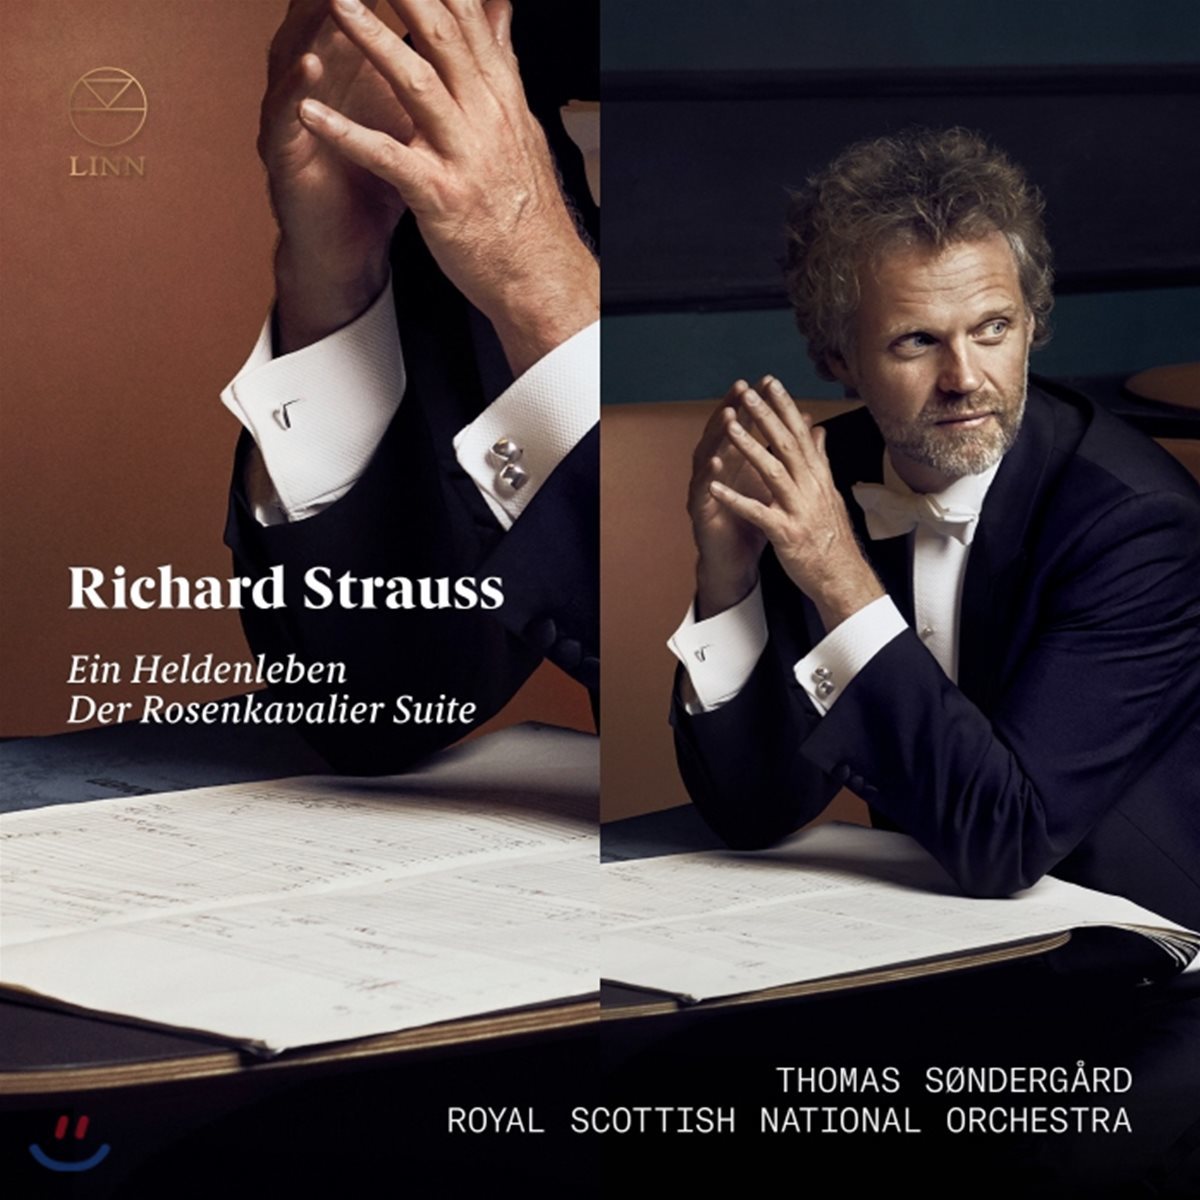 Thomas Sondergard 슈트라우스: 영웅의 생애, 장미의 기사 모음곡 (R. Strauss: Ein Heldenleben, Der Rosenkavalier Suite)